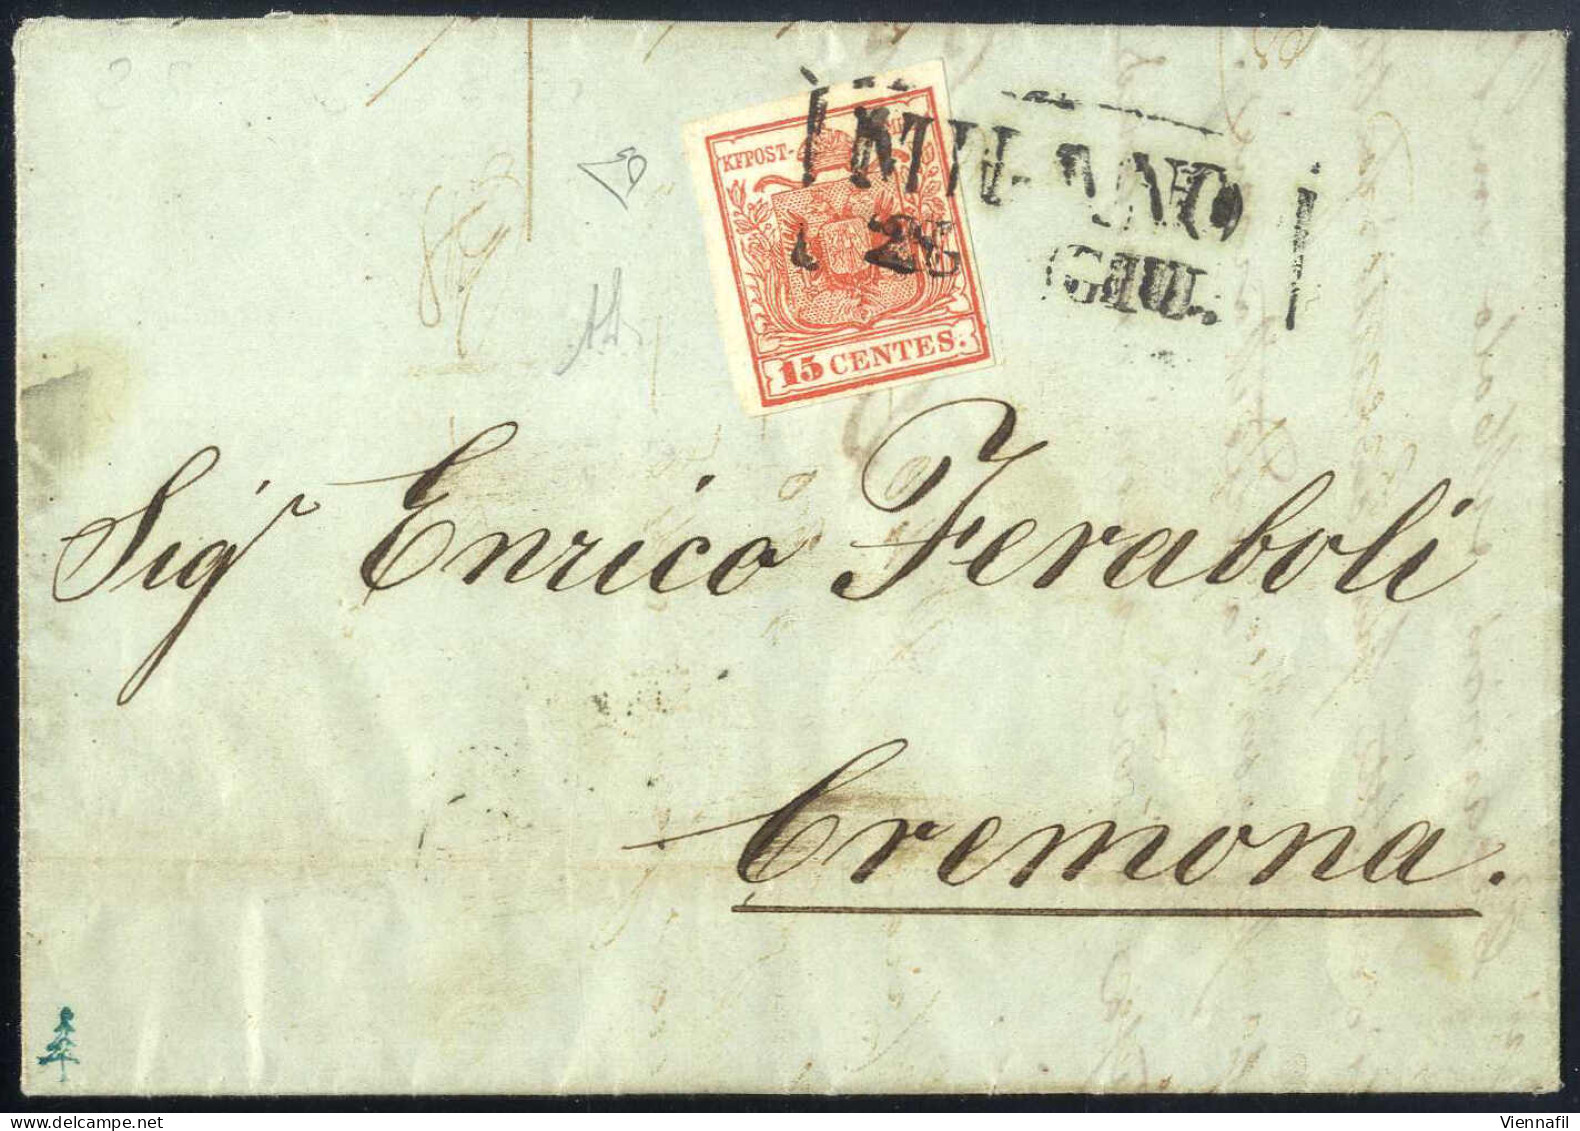 Cover 1850, Lettera Da Milano (SD II Parzialmente Riquadrato Punti 7) Del 28.6 Ventottesimo Giorno D'uso Per Cremona Aff - Lombardo-Vénétie